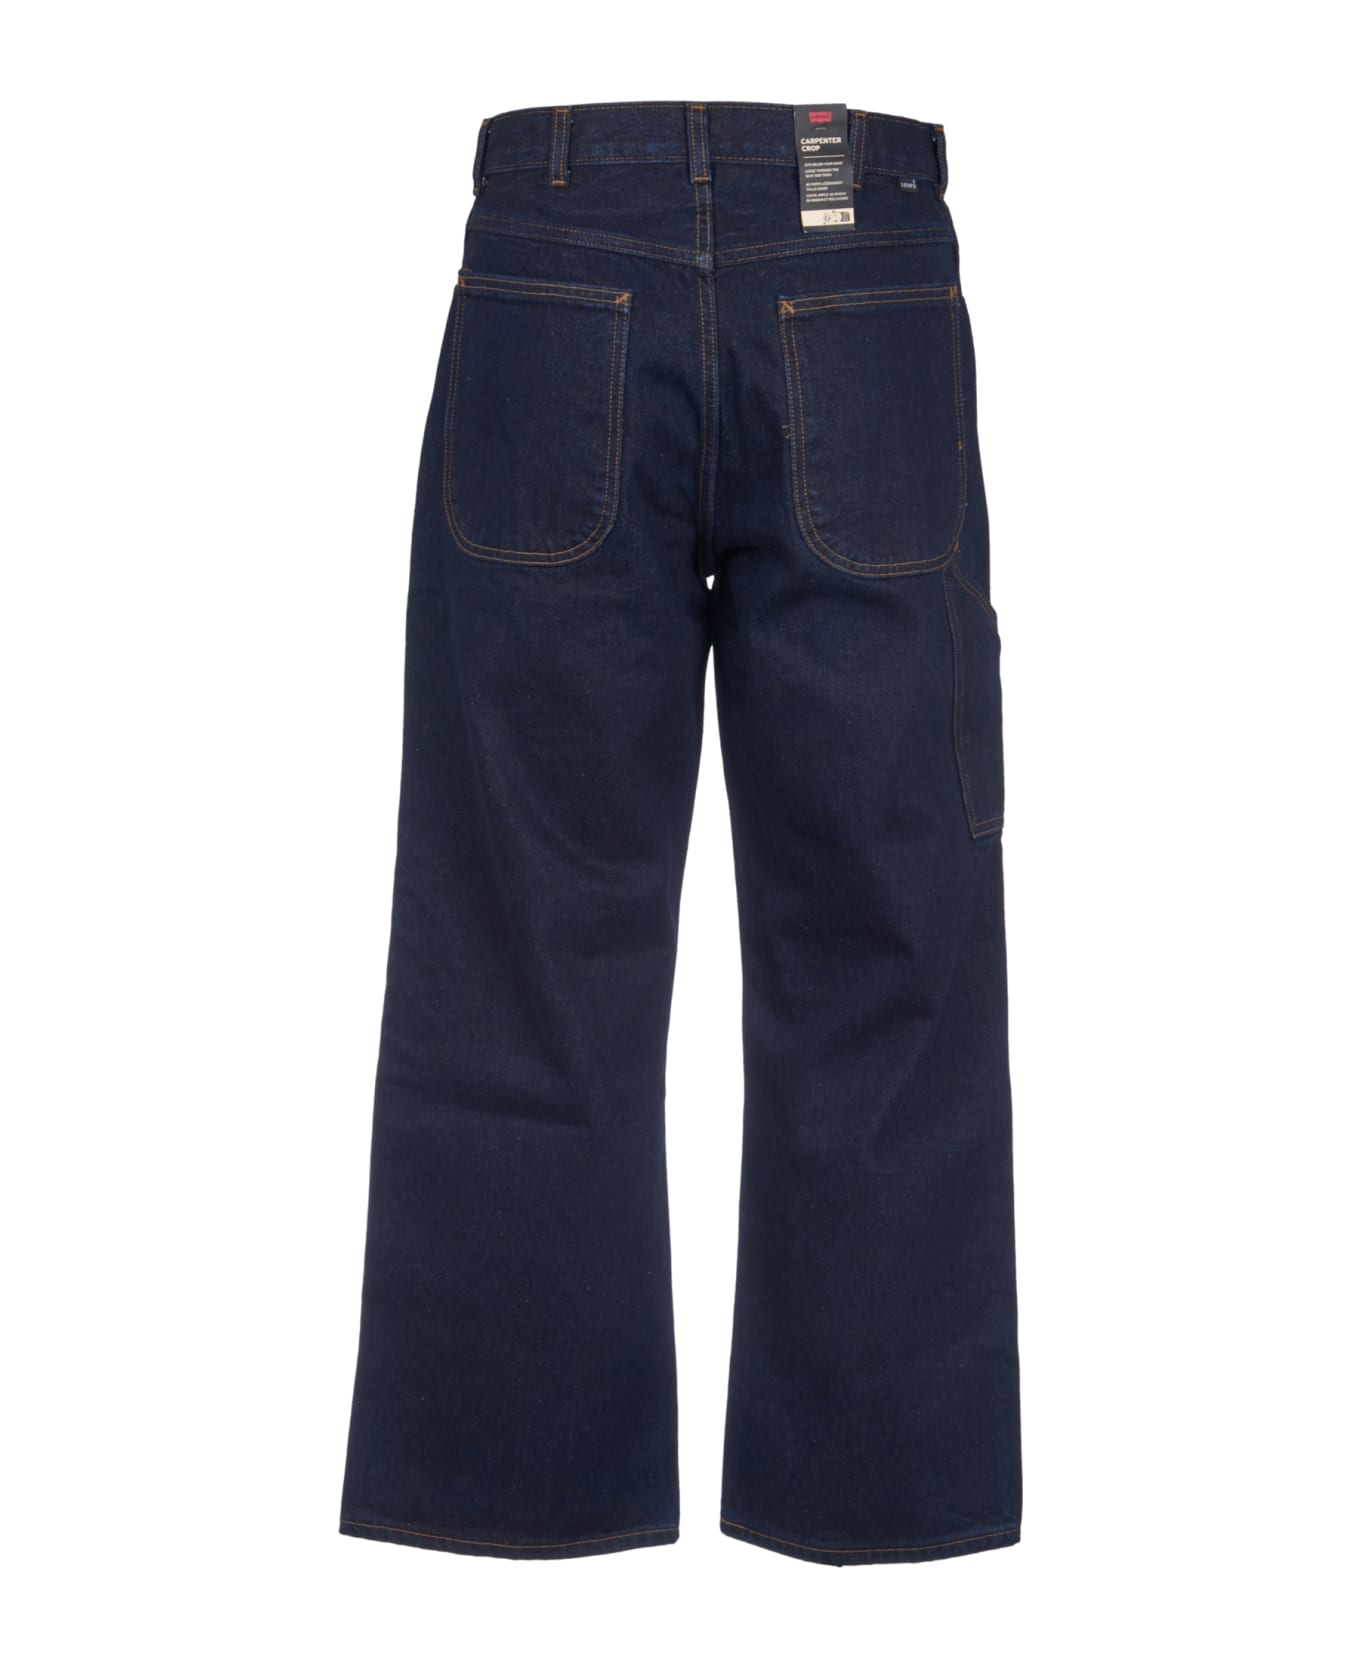 Levi's Buttoned Classic Jeans - Blue